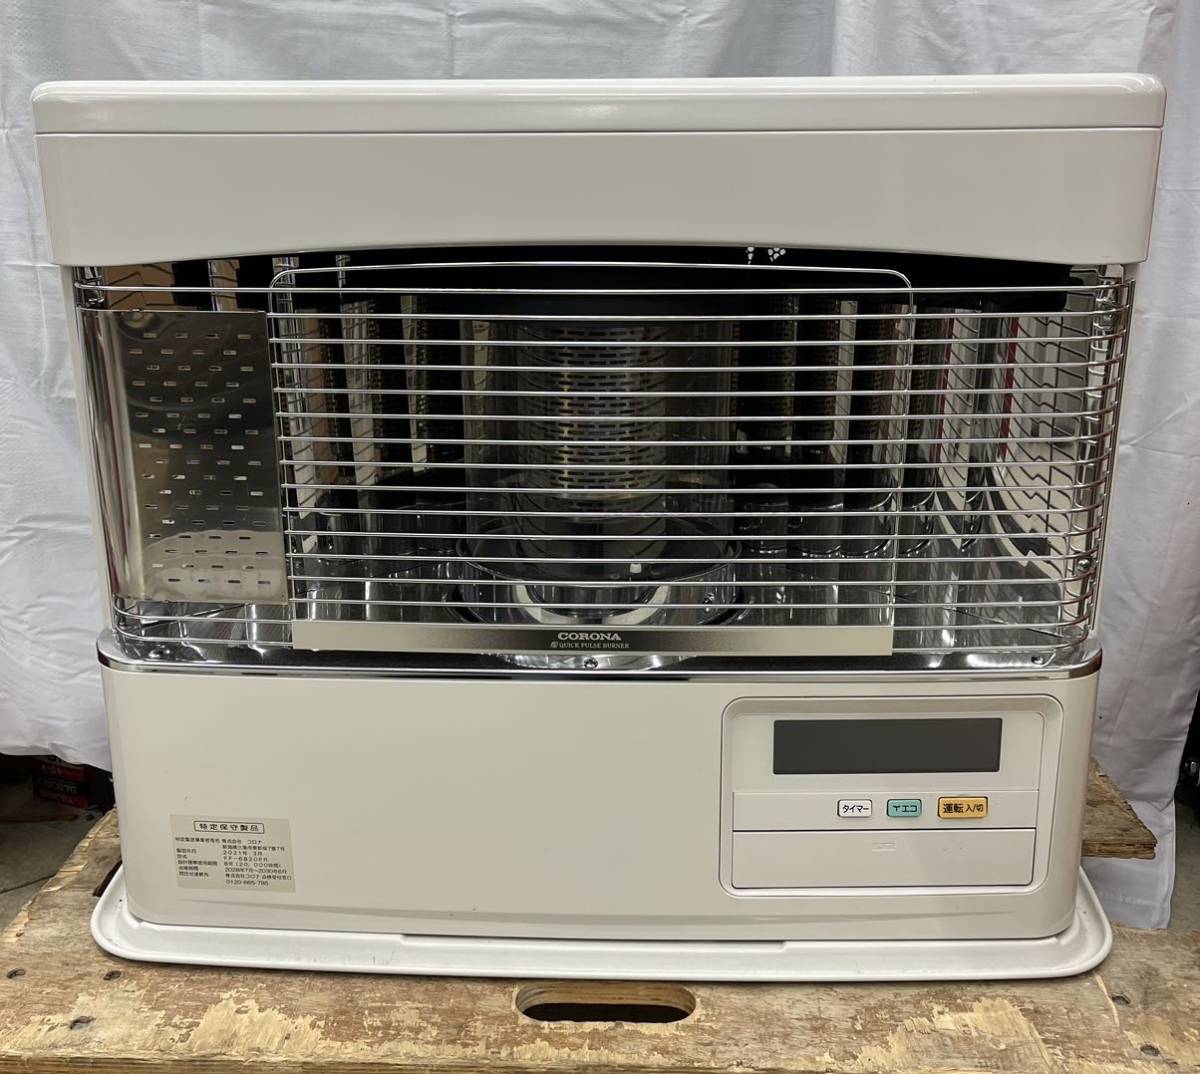 冷暖房/空調 ストーブ FF式 コロナCORONA スペースネオ 2018年型〈FF-SG6818K 〉 ストーブ 